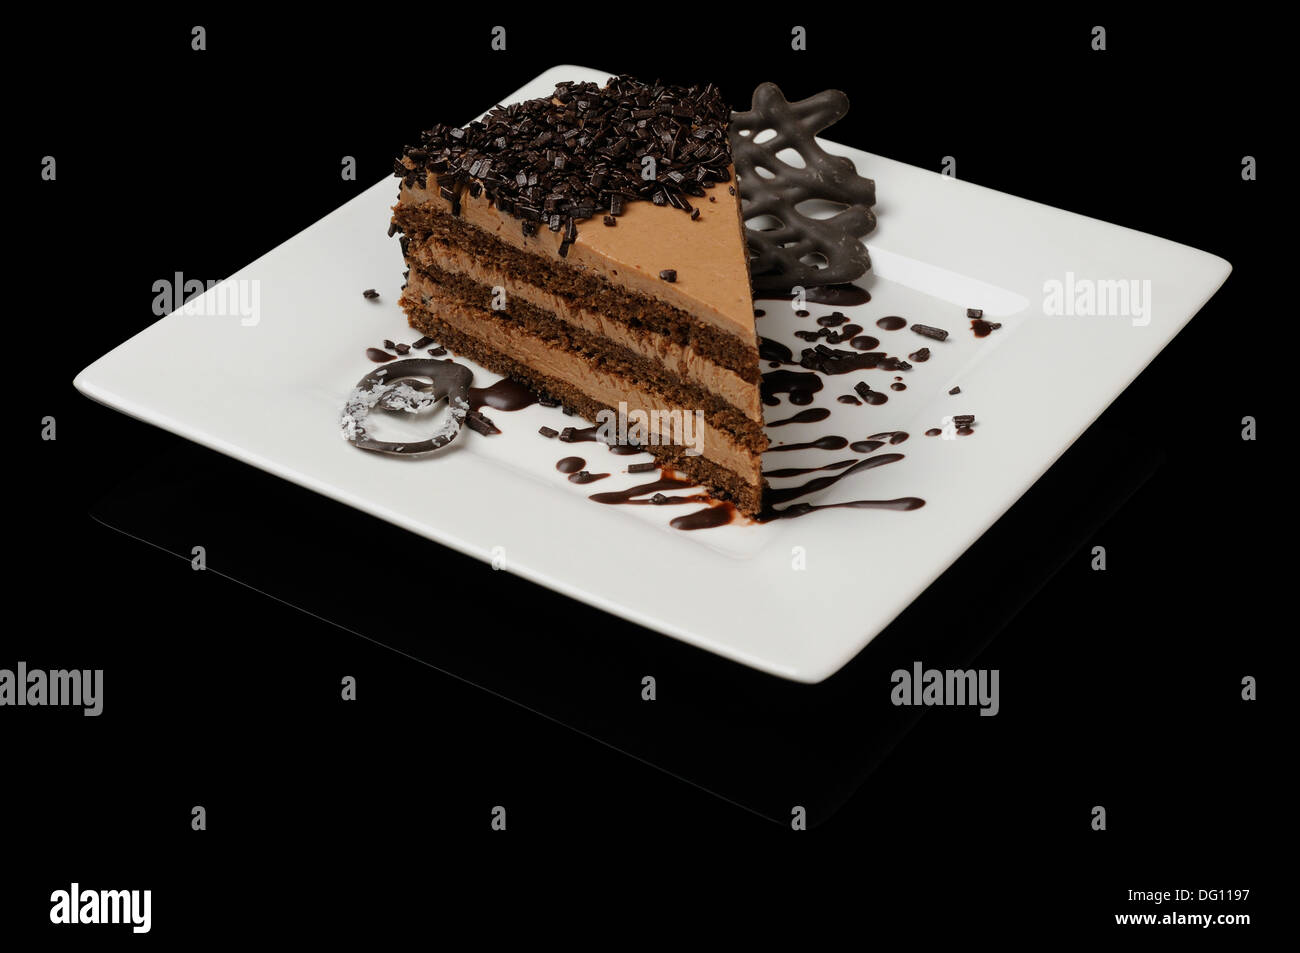 Gustosa torta al cioccolato con scaglie di cioccolato sulla piastra bianca Foto Stock